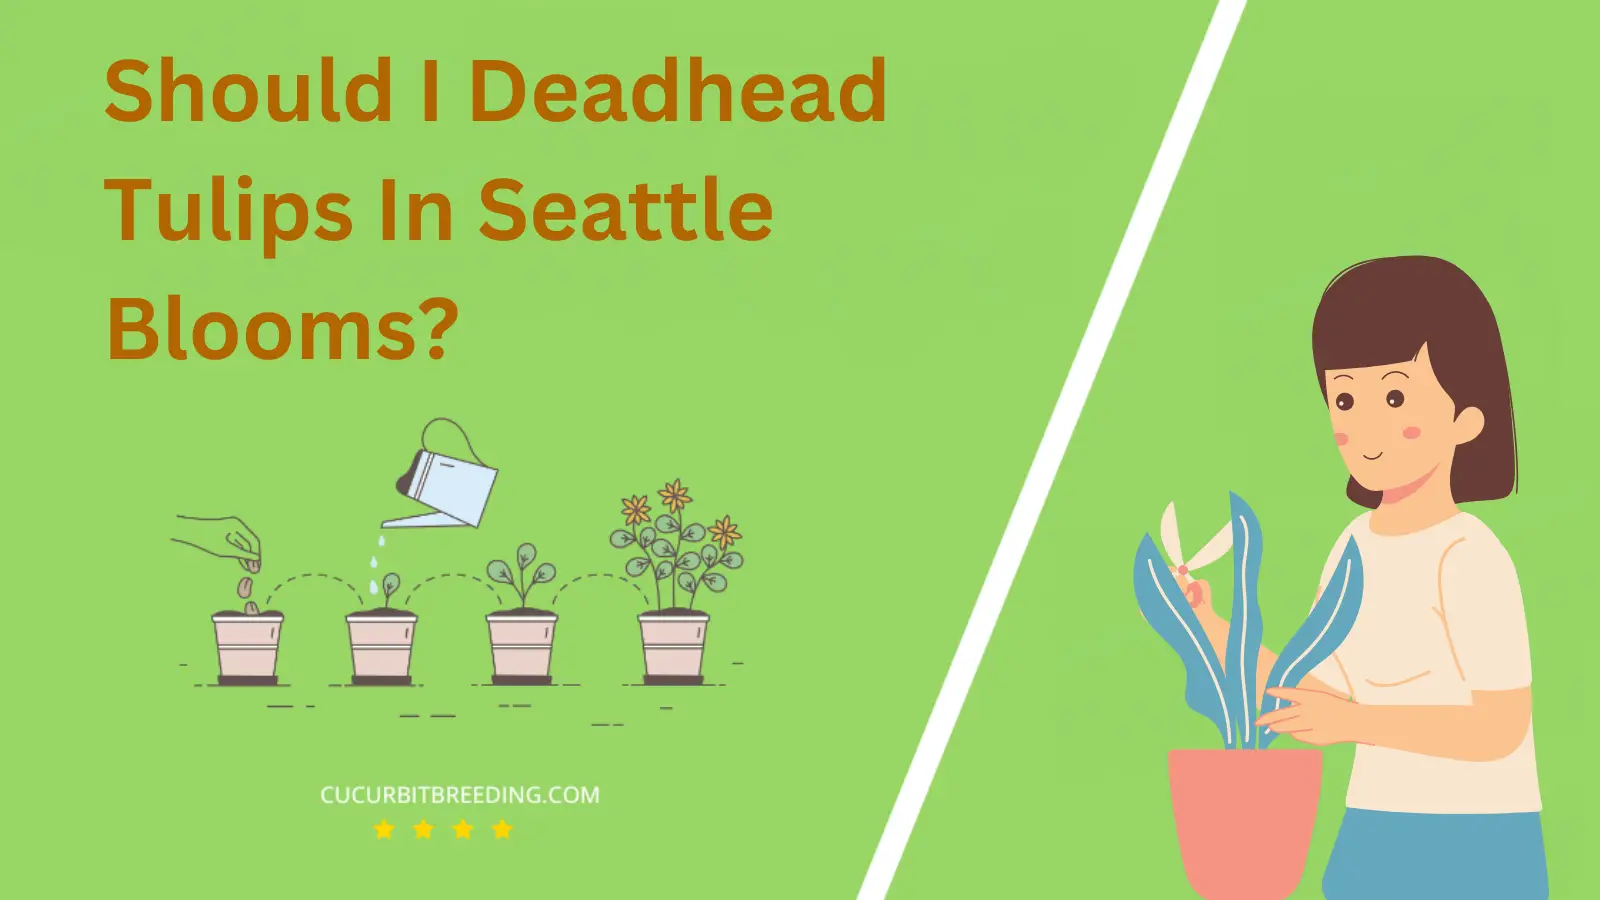 Should I Deadhead Tulips In Seattle Blooms?